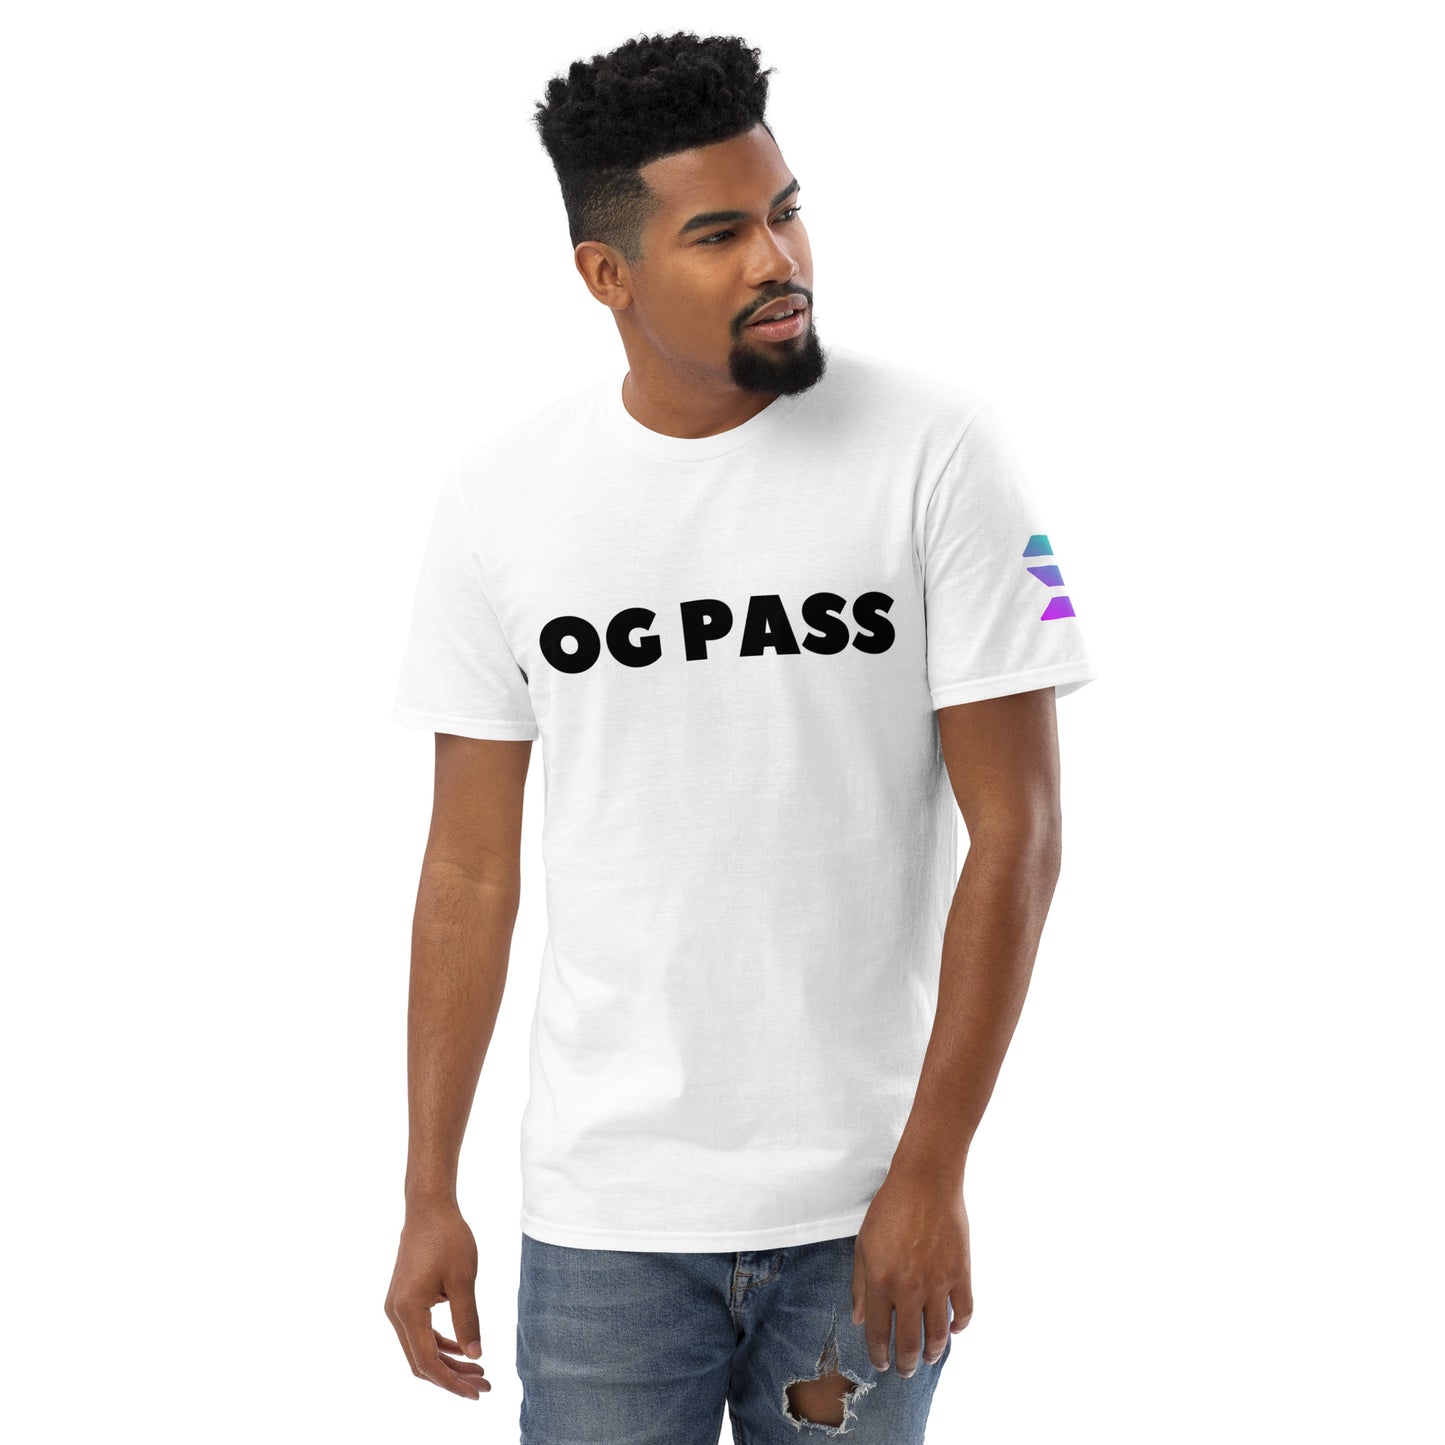 OG PASS T-Shirt